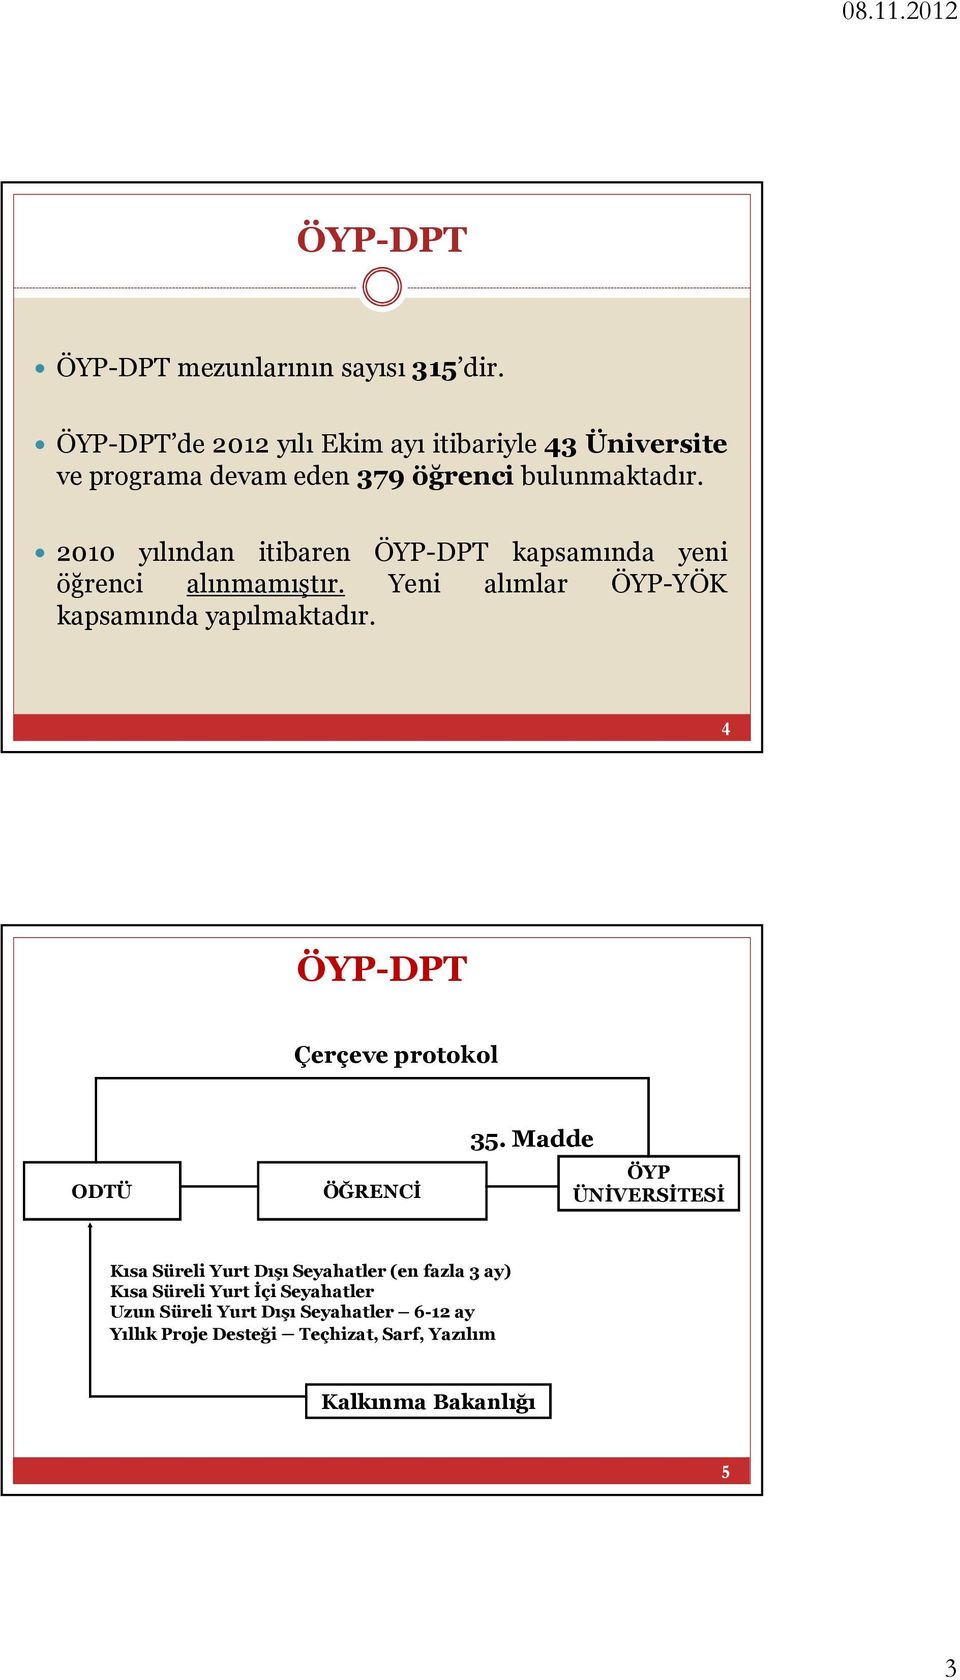 2010 yılından itibaren ÖYP-DPT kapsamında yeni öğrenci alınmamıştır. Yeni alımlar kapsamında yapılmaktadır.